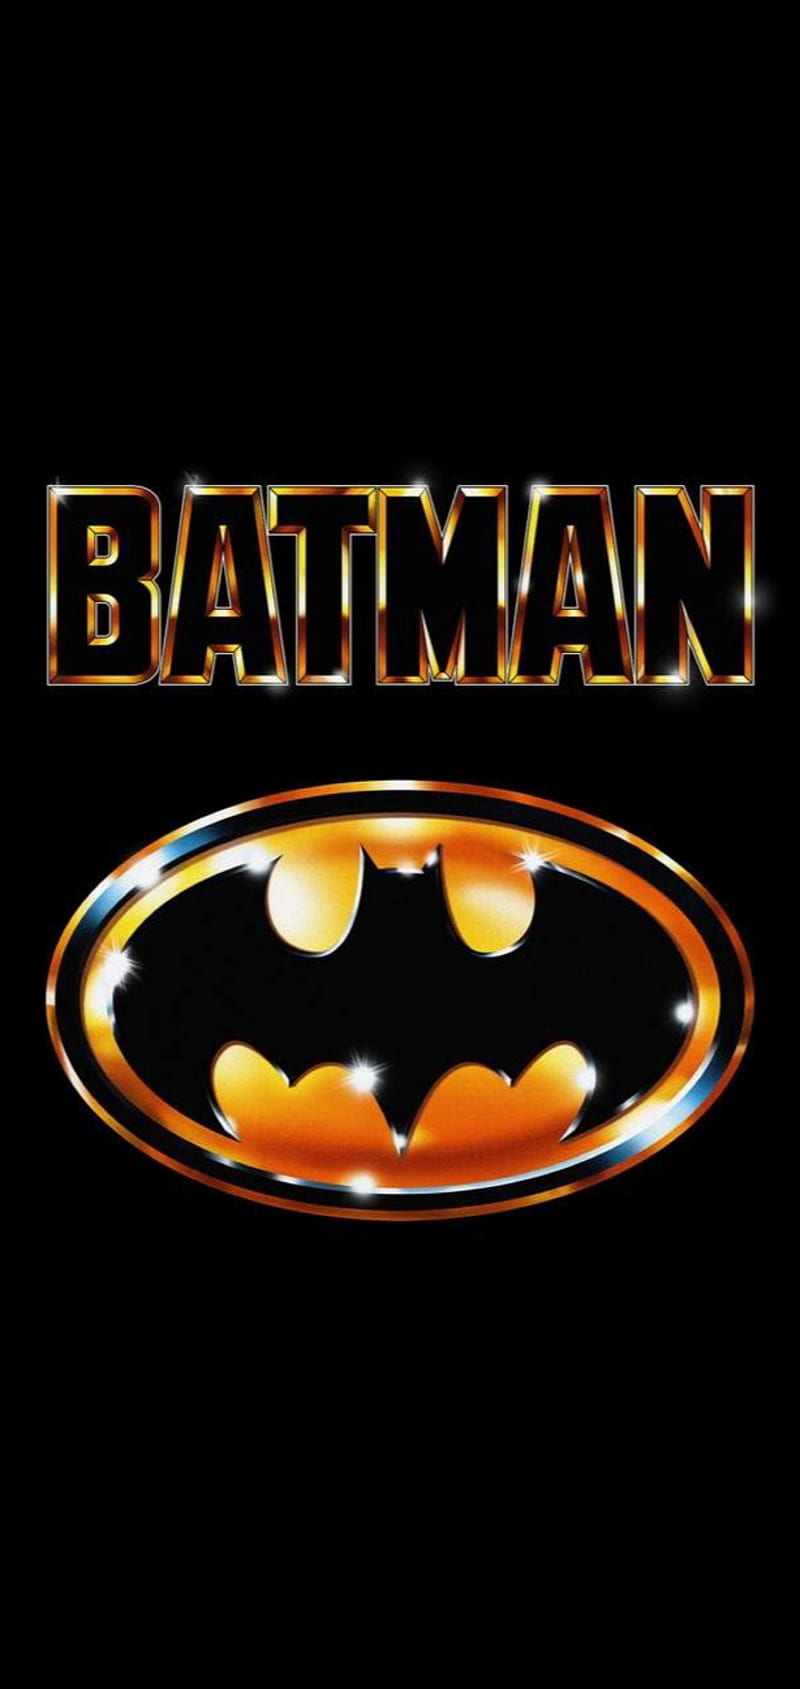 batman 1989 logo tattoo